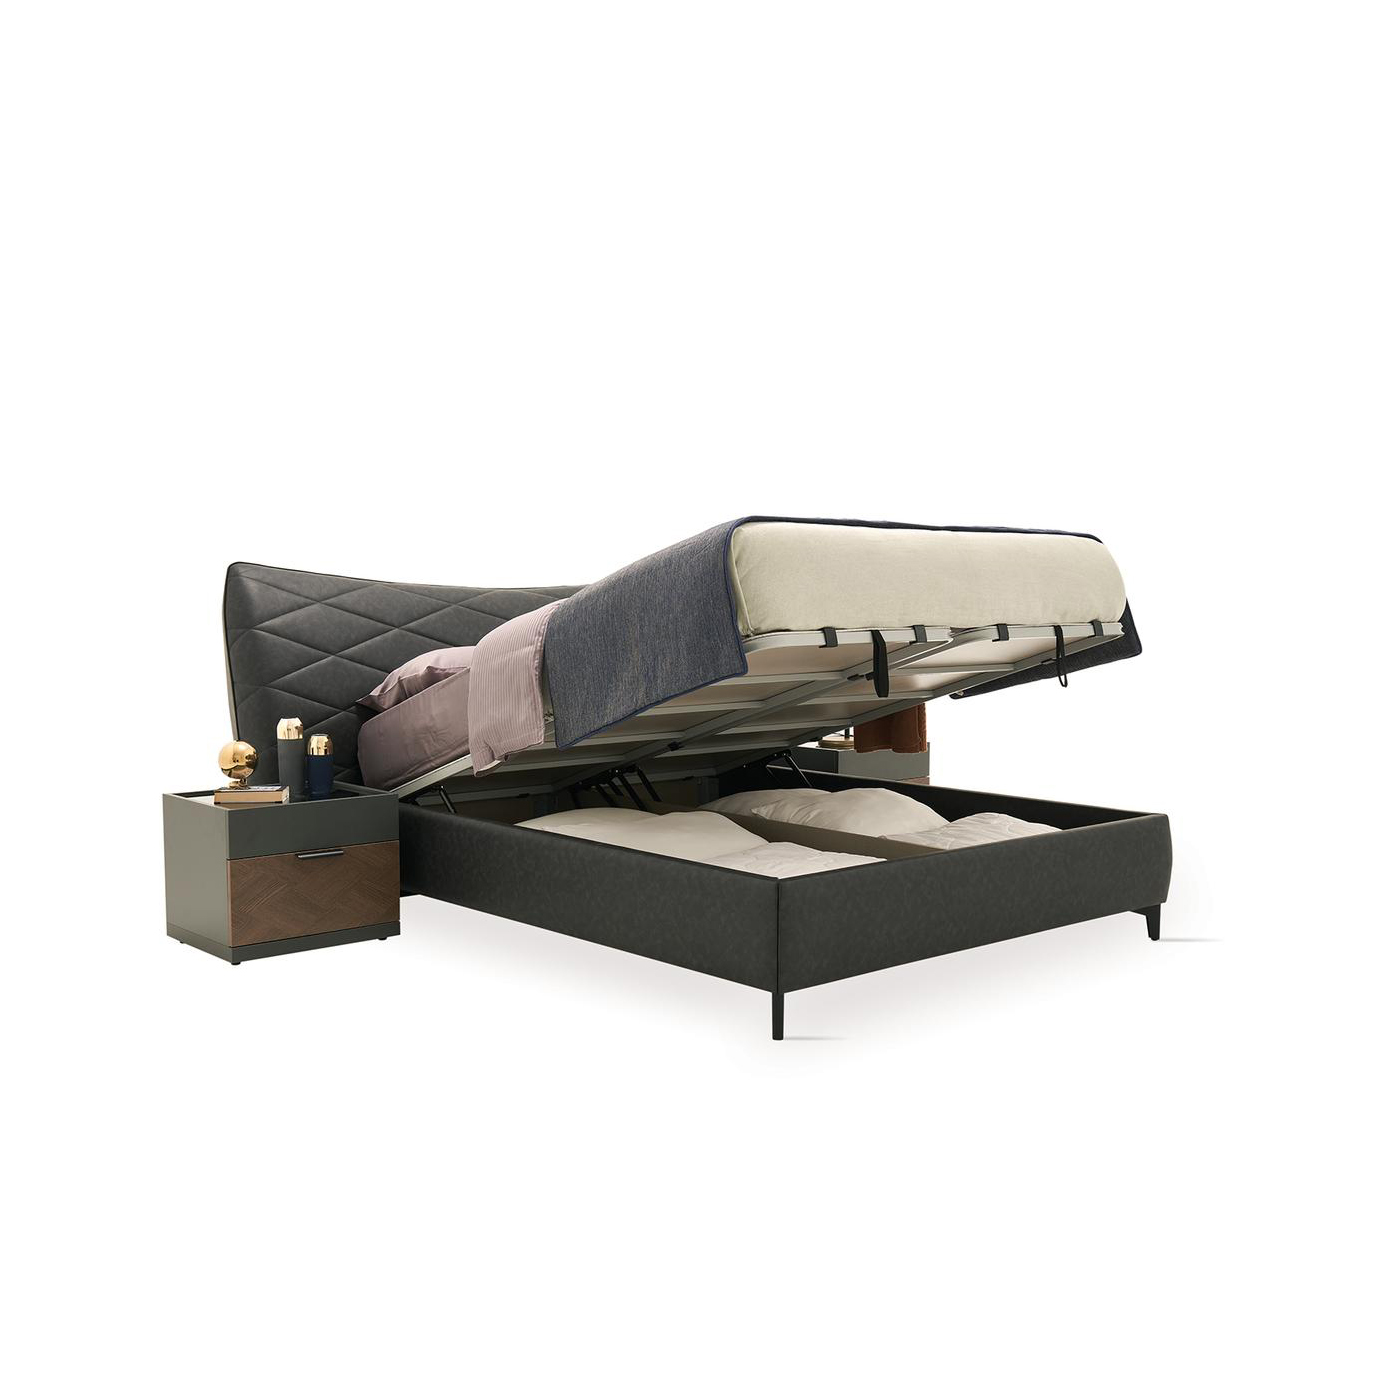 Кровать Enza Home Dorian, двуспальная, с подъемным механизмом, 180х200 см